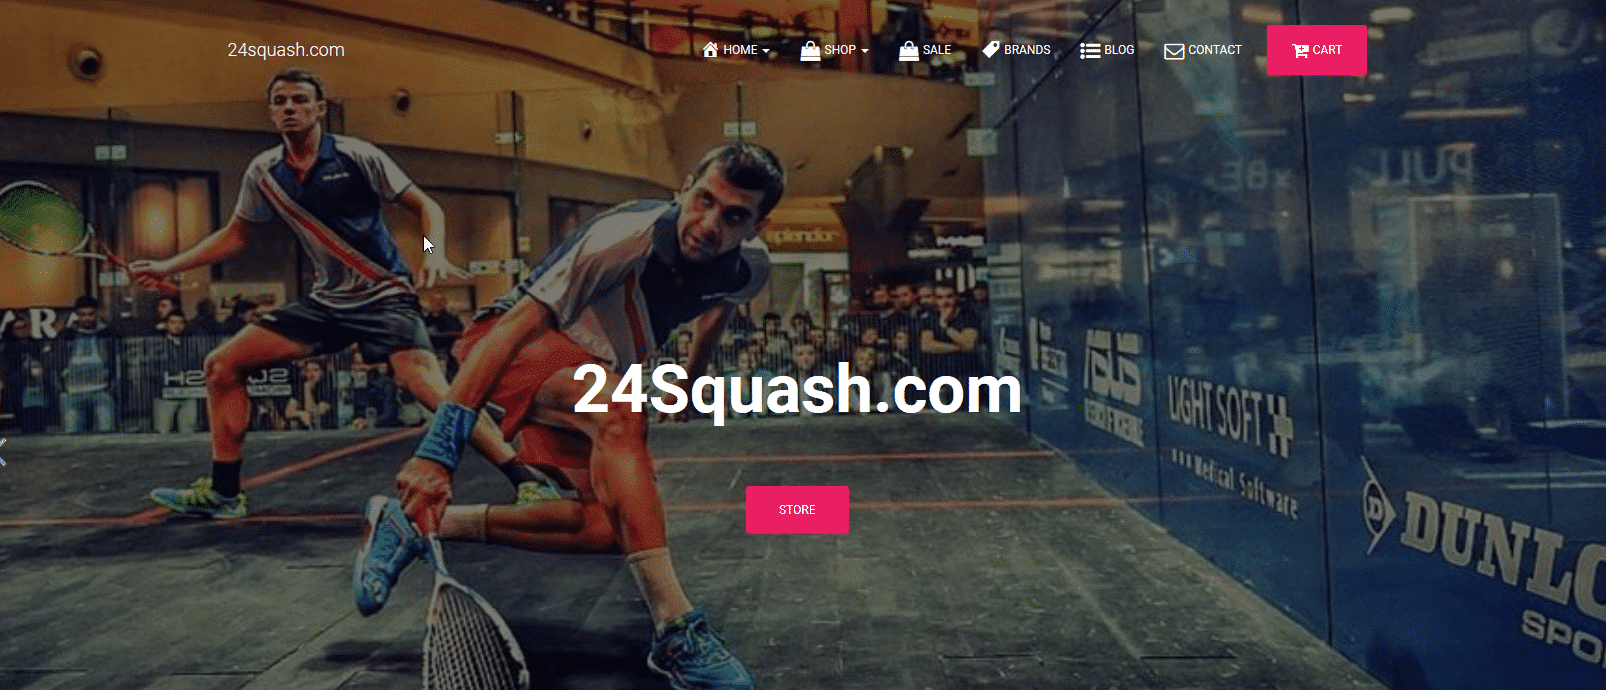 24squash.com live